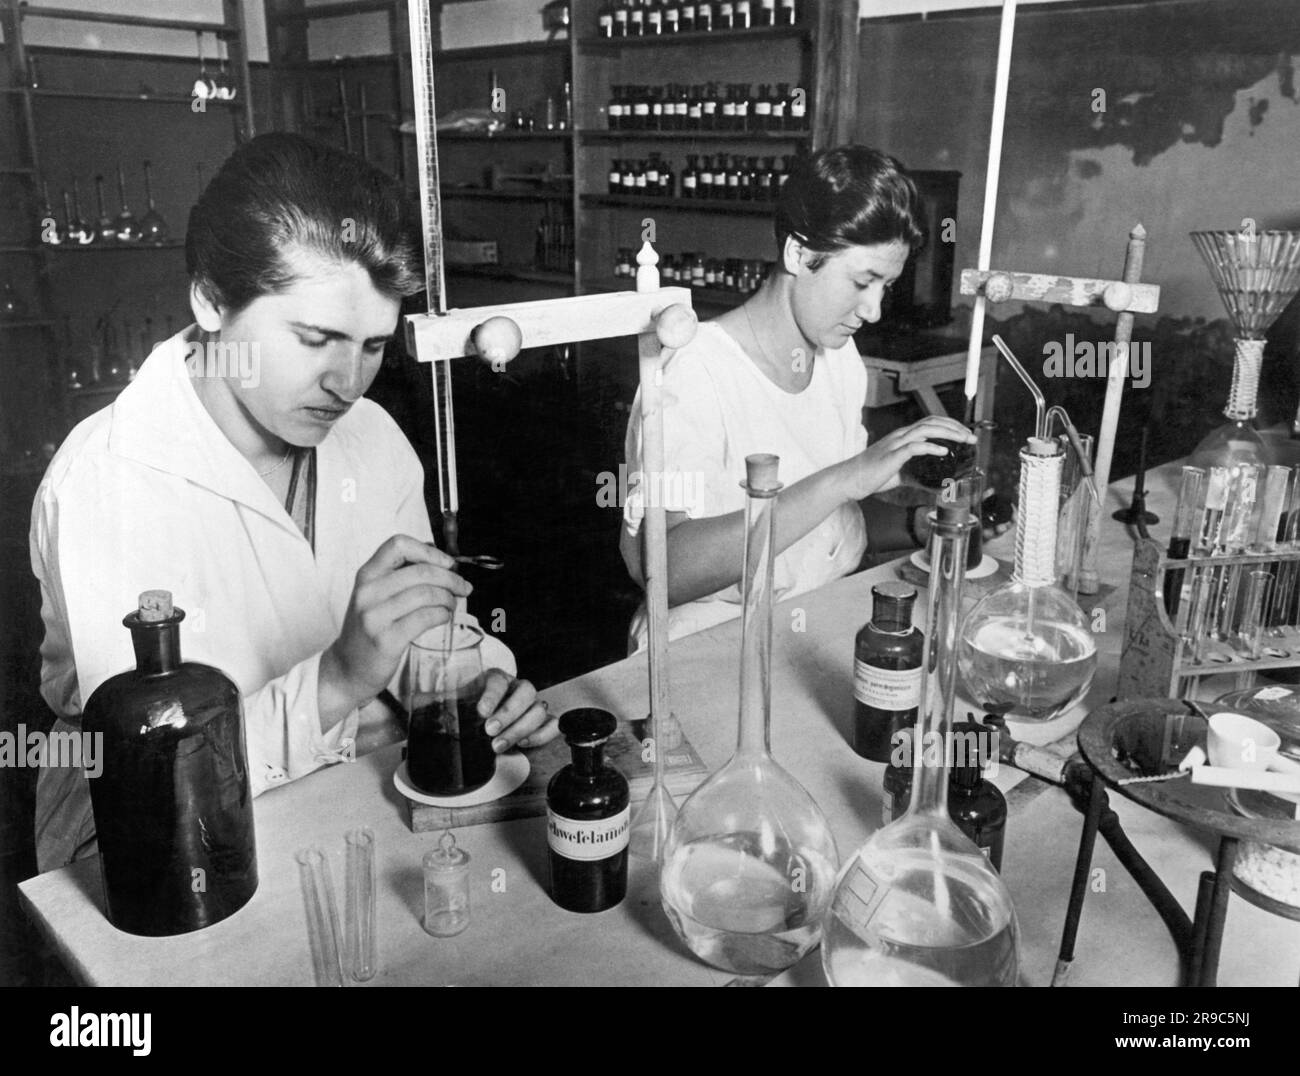 Berlino, Germania: c. 1929 ricercatori dell'Istituto batterio-fisiologico del Dr. Piorkowski di Berlino usano i metodi e le attrezzature più moderni nella ricerca sui germi in corso. Qui gli assistenti di laboratorio vengono addestrati all'Istituto. Foto Stock